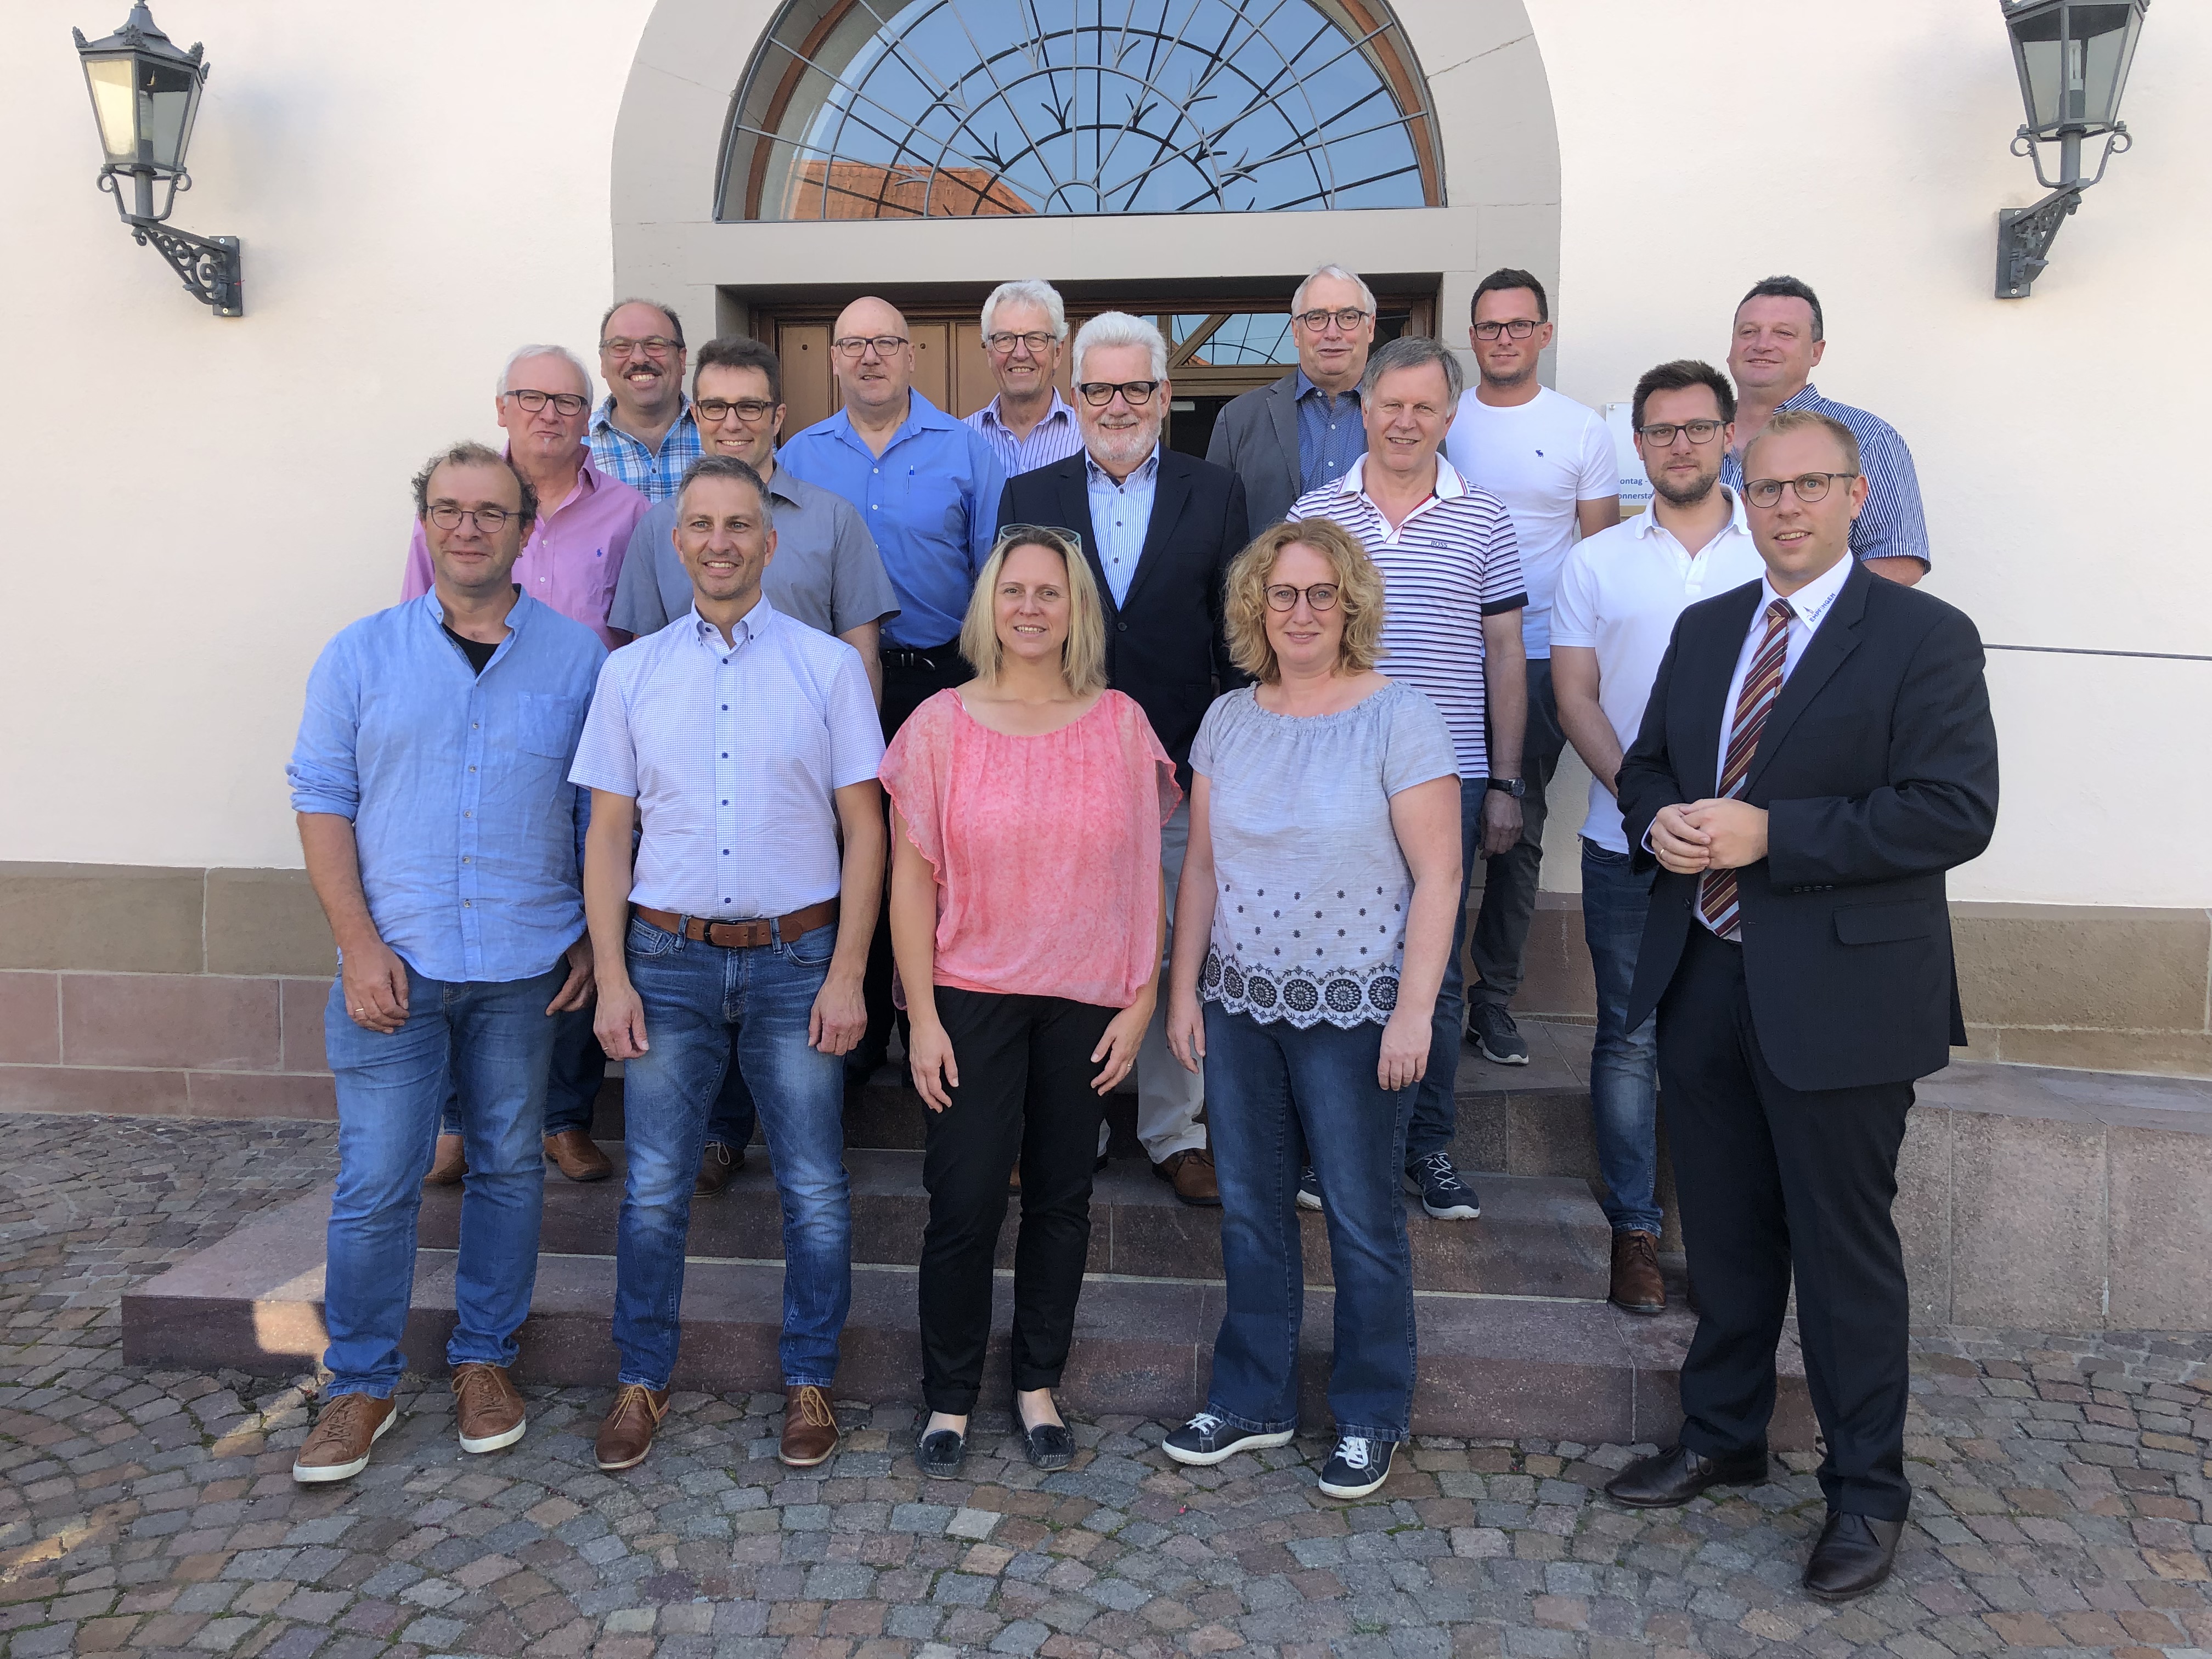  Gruppenfoto aller Mitglieder des Gemeinderats der Gemeinde Empfingen - Bild mit Klick vergrößern 